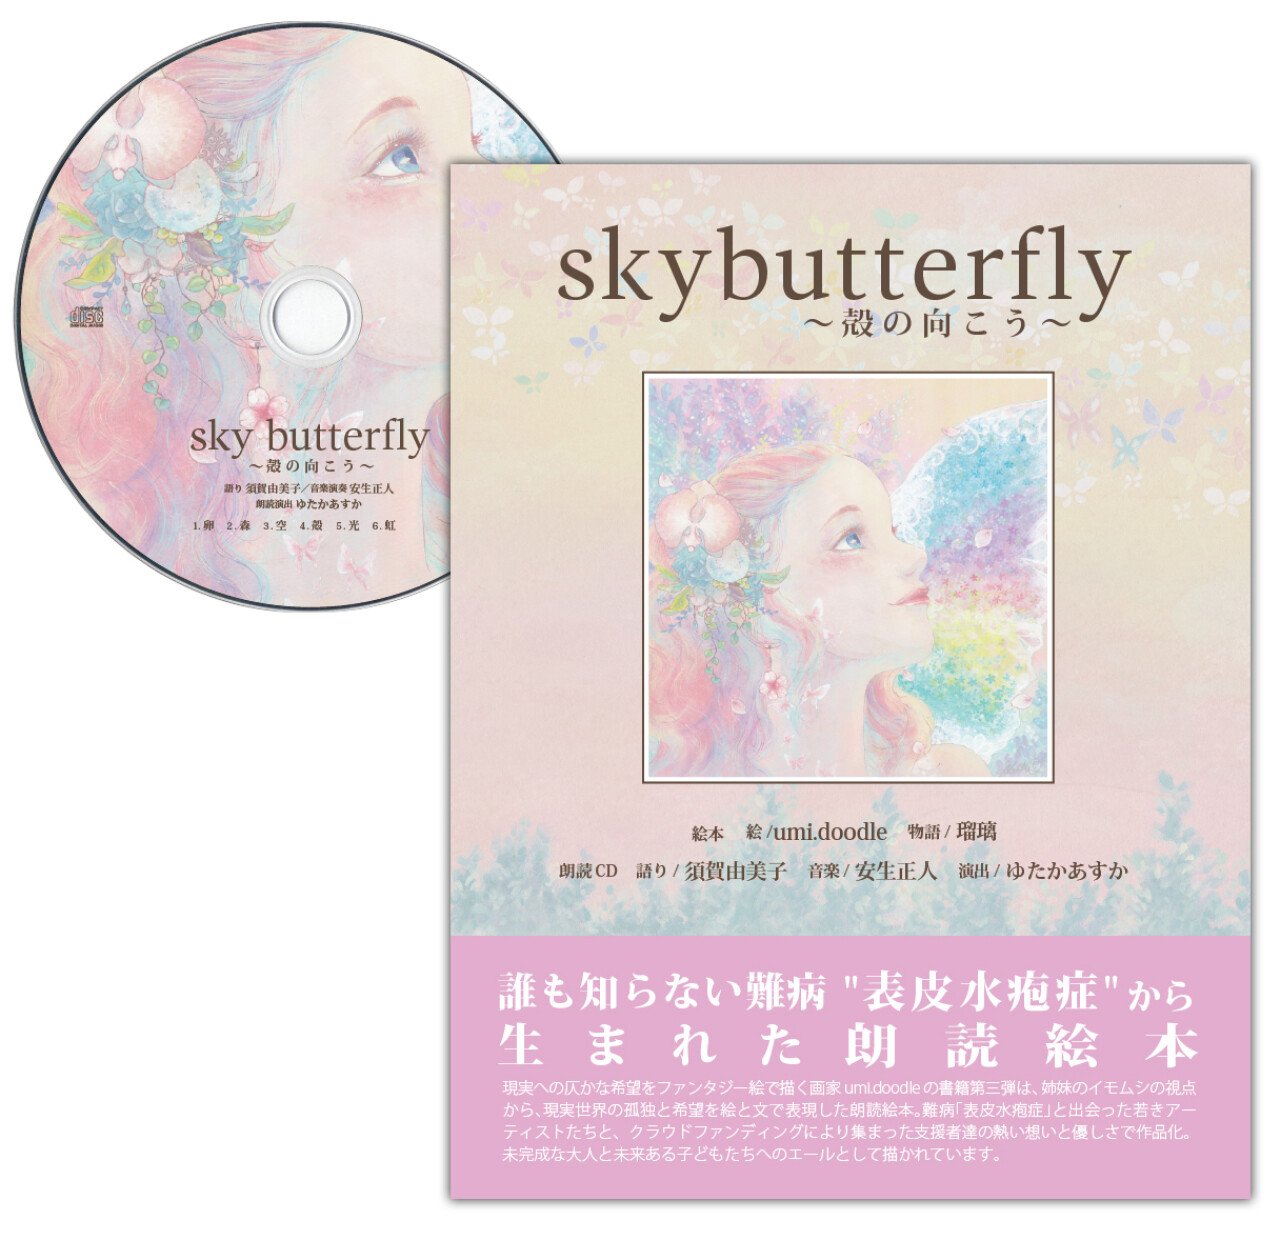 朗読絵本『skybutterfly 〜殻の向こう〜』